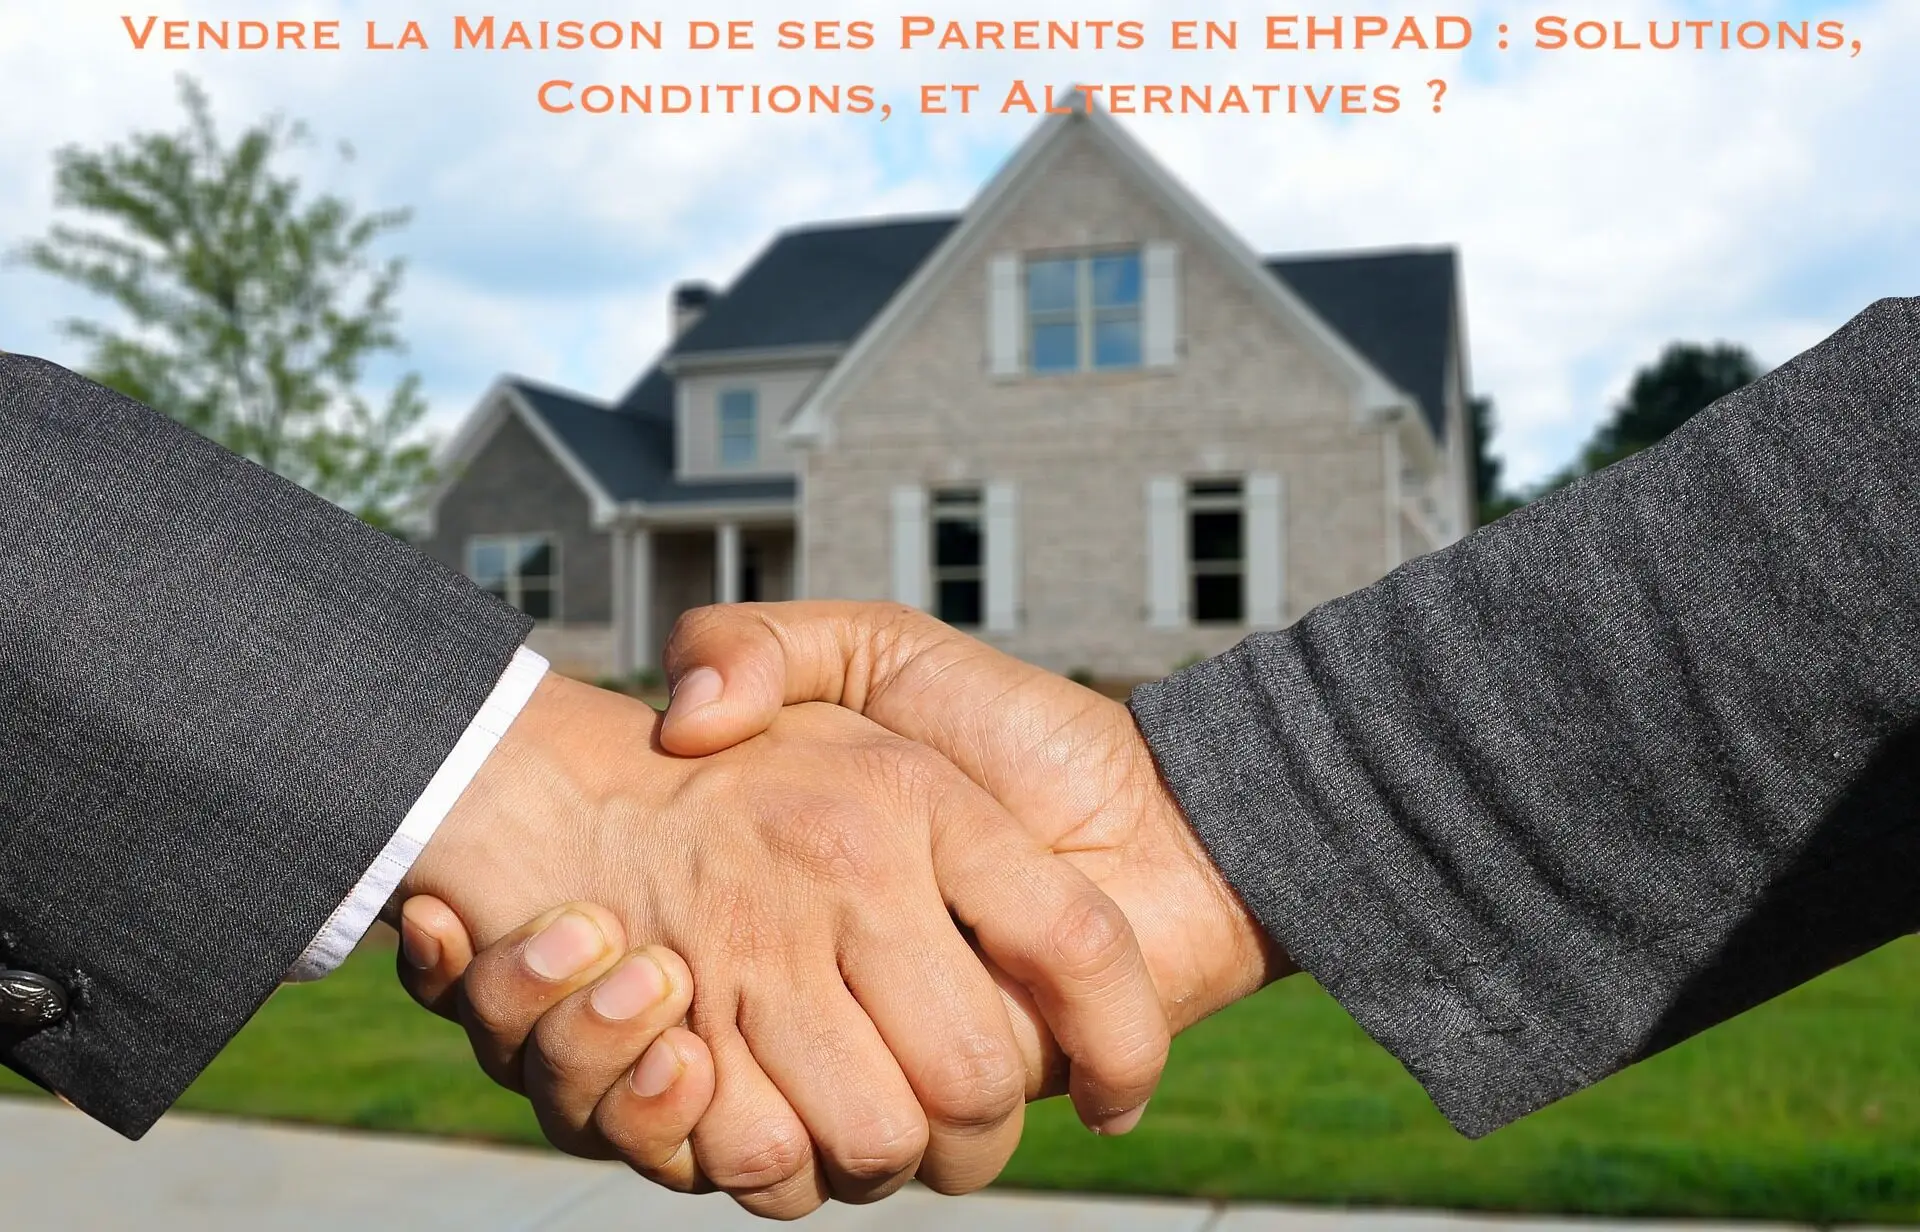 Lire la suite à propos de l’article Vendre la maison de ses parents en EHPAD : Solutions, conditions, et alternatives ?